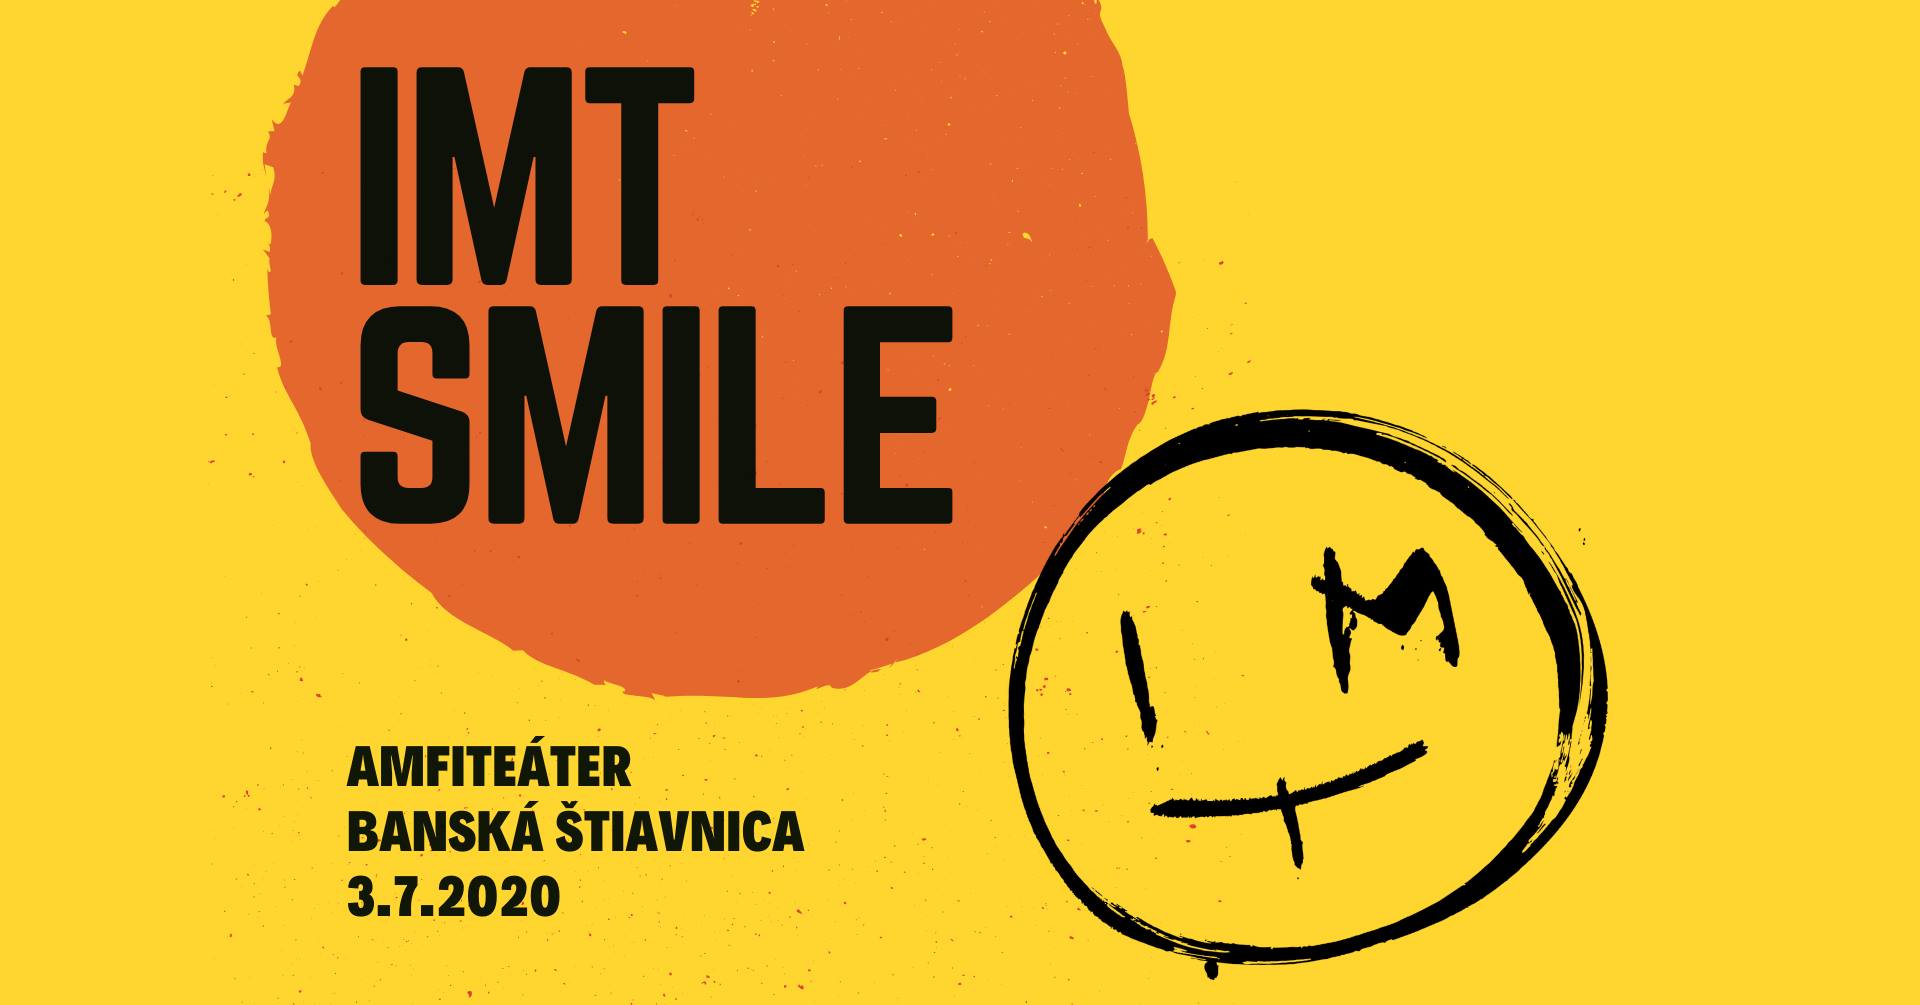 IMT SMILE - Banská Štiavnica - Amfiteáter